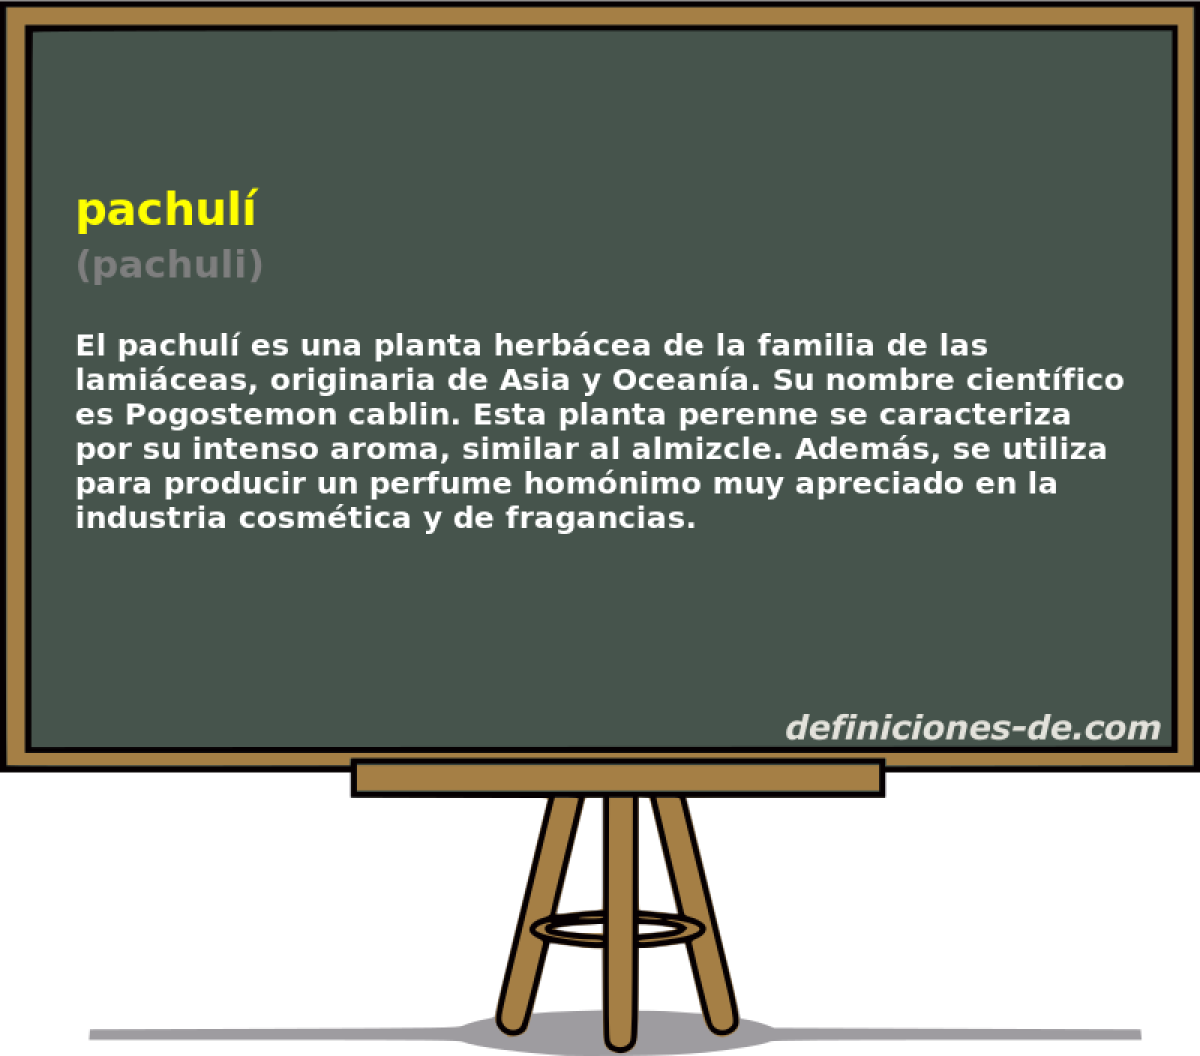 pachul (pachuli)